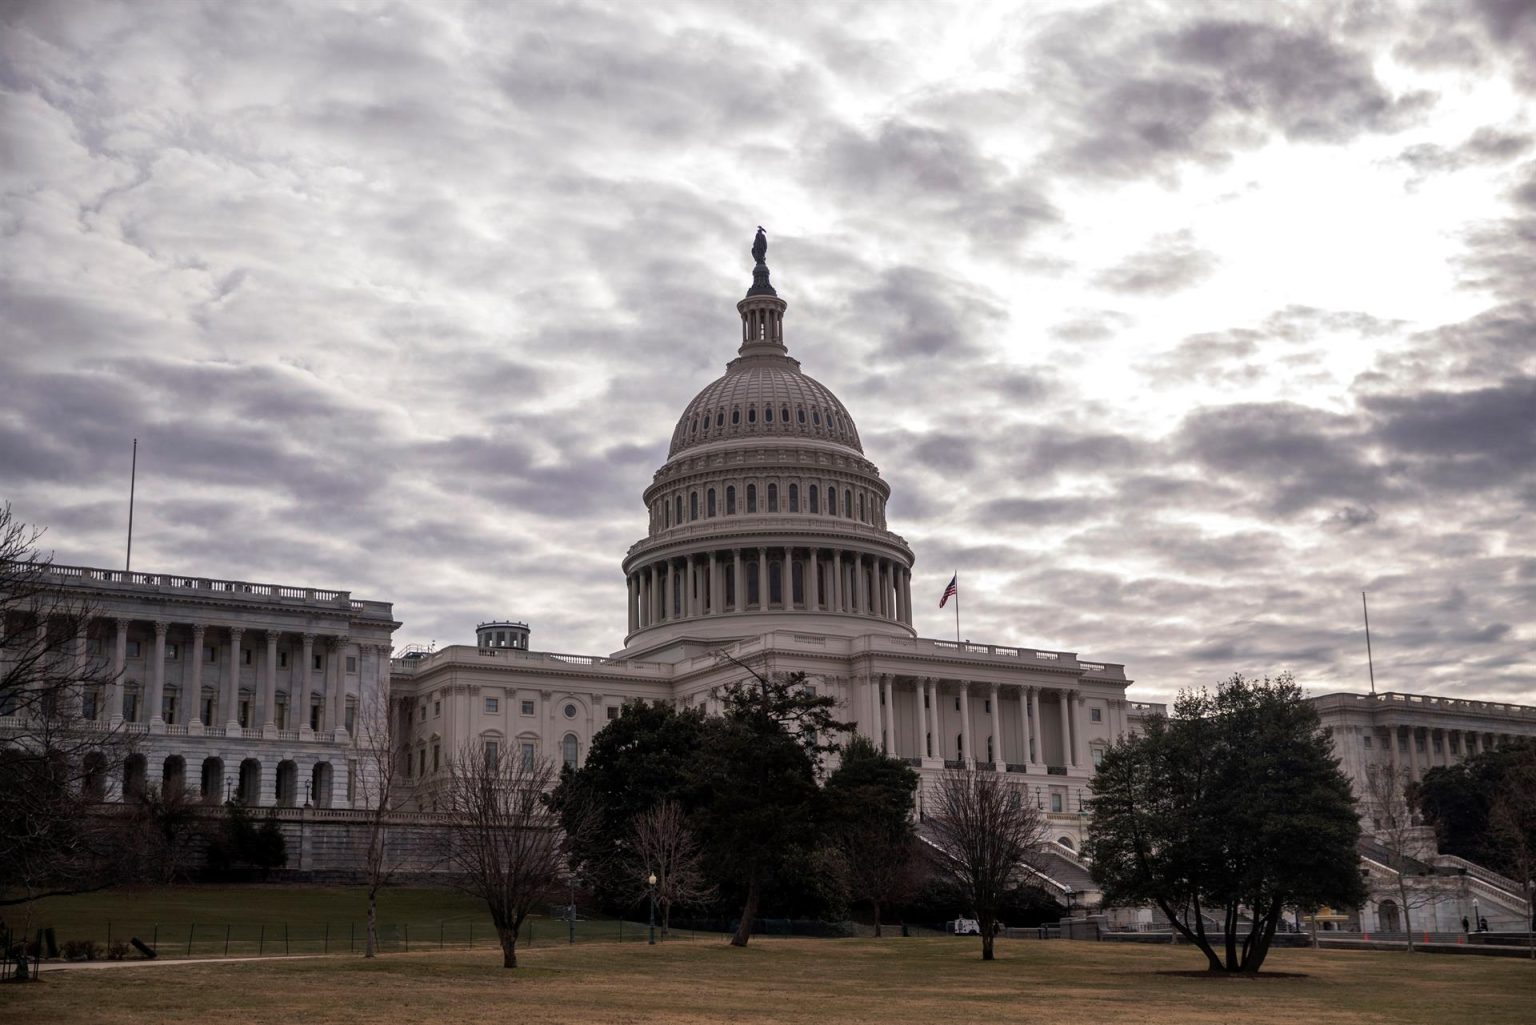 Vista del exterior del Capitolio en Washington DC, Estados Unidos. Imagen de archivo. EFE/Shawn Thew